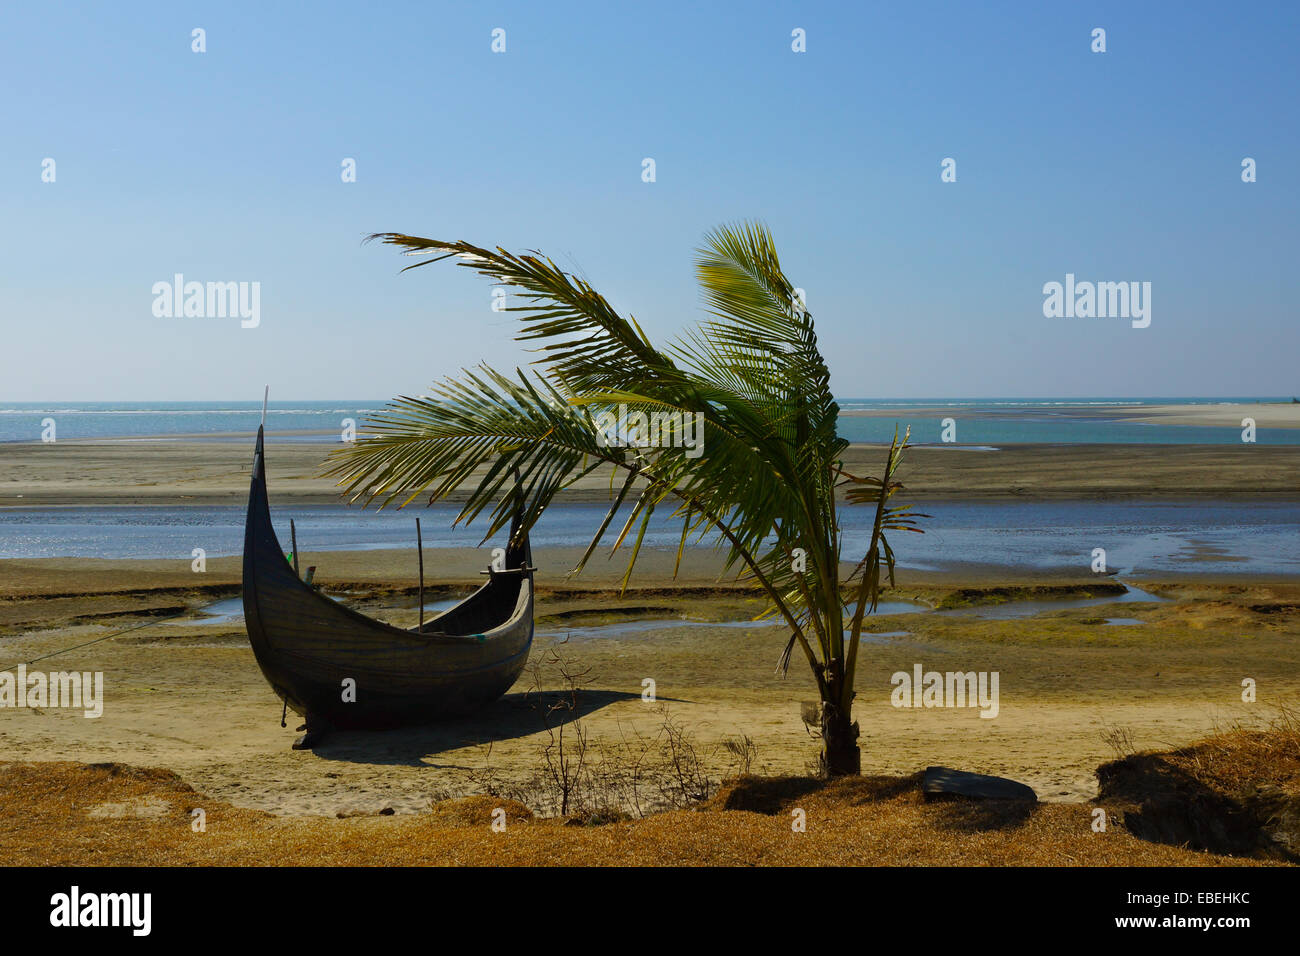 Messa a terra, legno barca da pesca e una palma da cocco albero su di una spiaggia in Cox bazar, Bangladesh durante la bassa marea Foto Stock